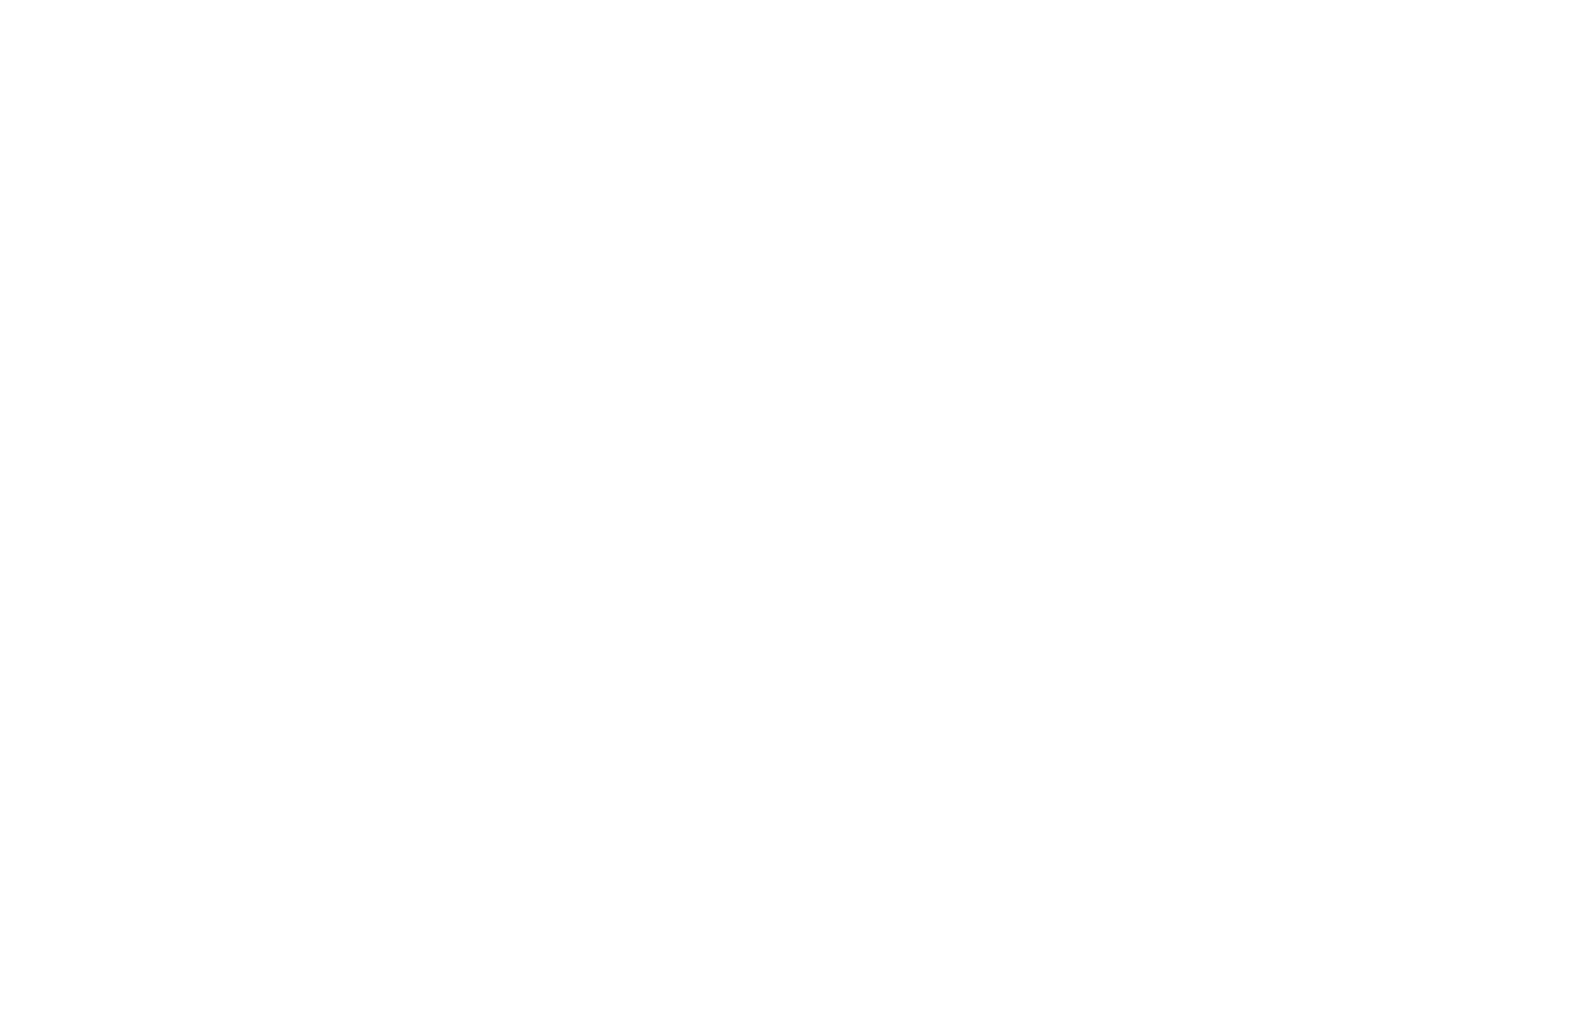 Union Bankshares logo for dark backgrounds (transparent PNG)